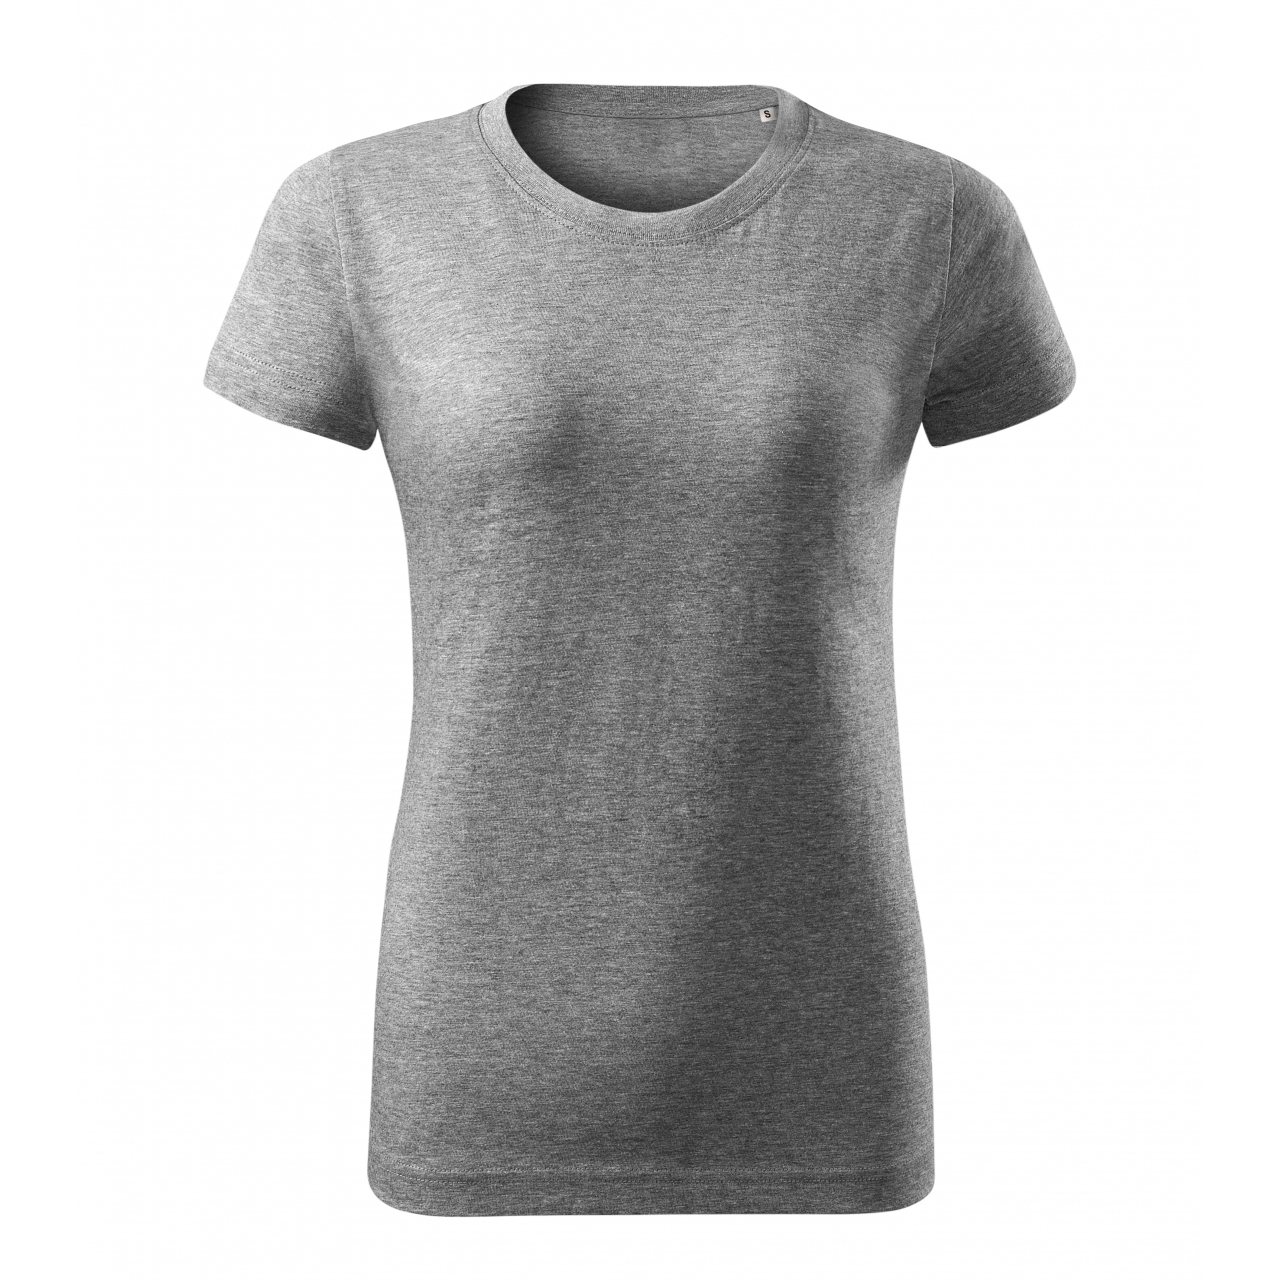 Tričko dámské Malfini Basic Free - šedé, XS